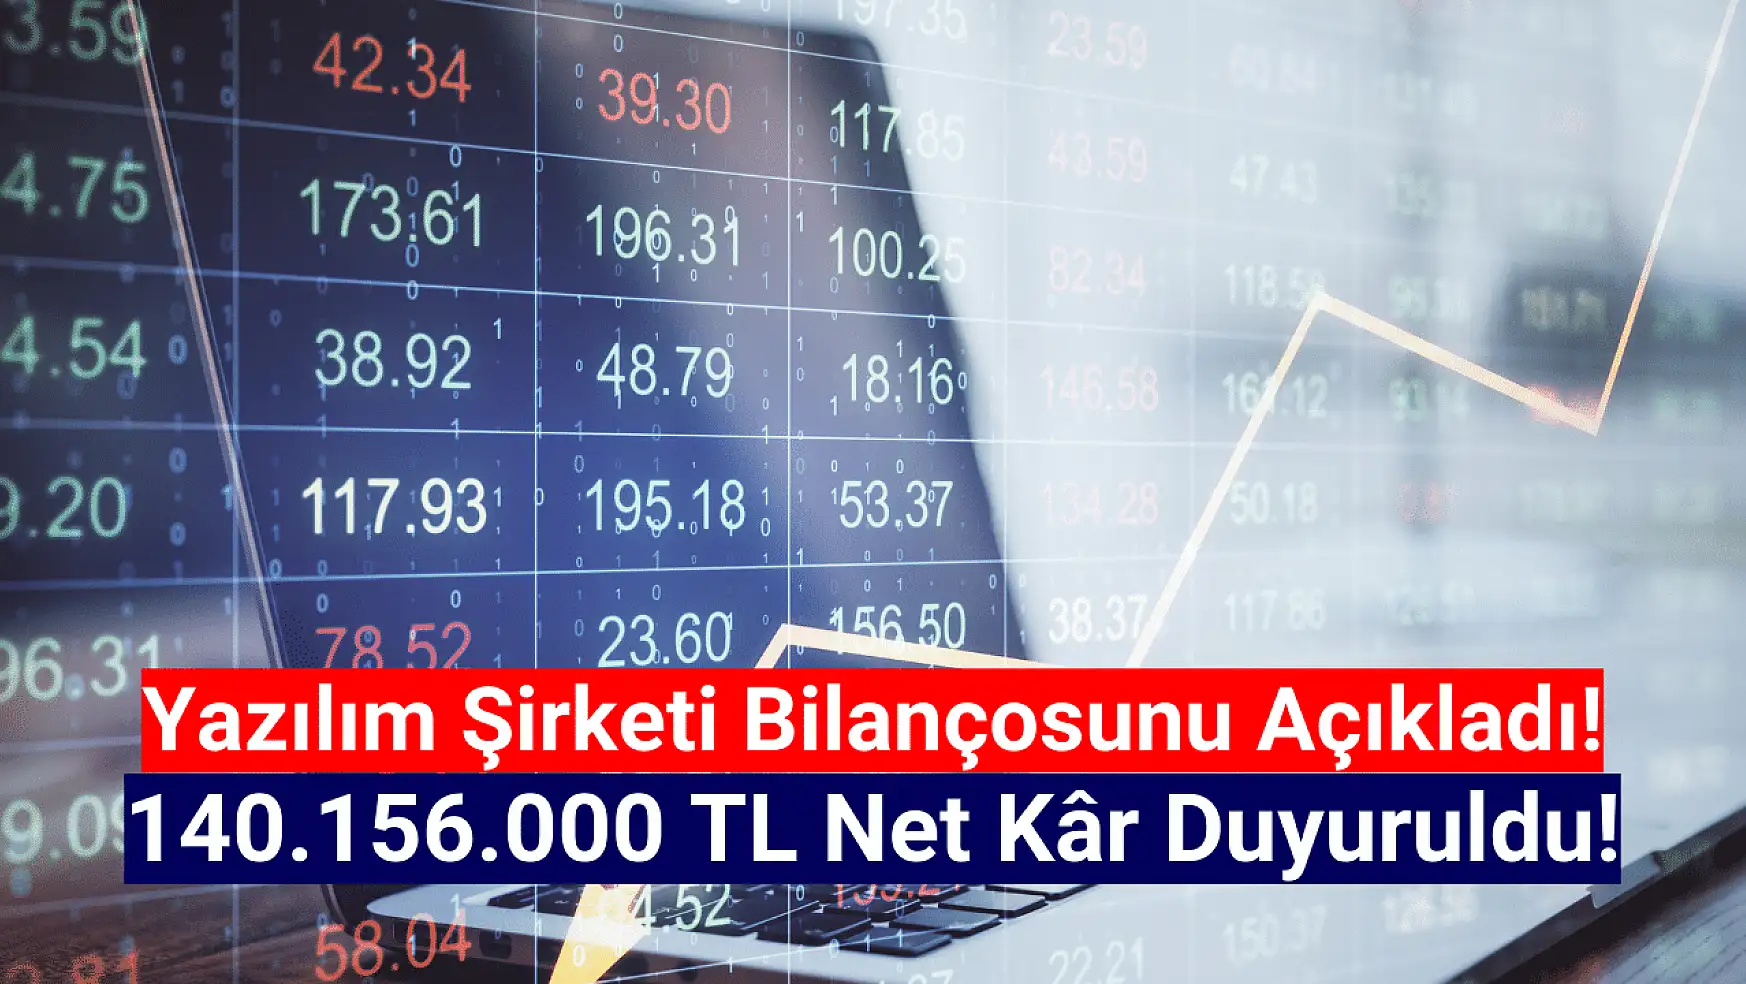 Yazılım şirketi 140.156.000 TL net kâr açıkladı!